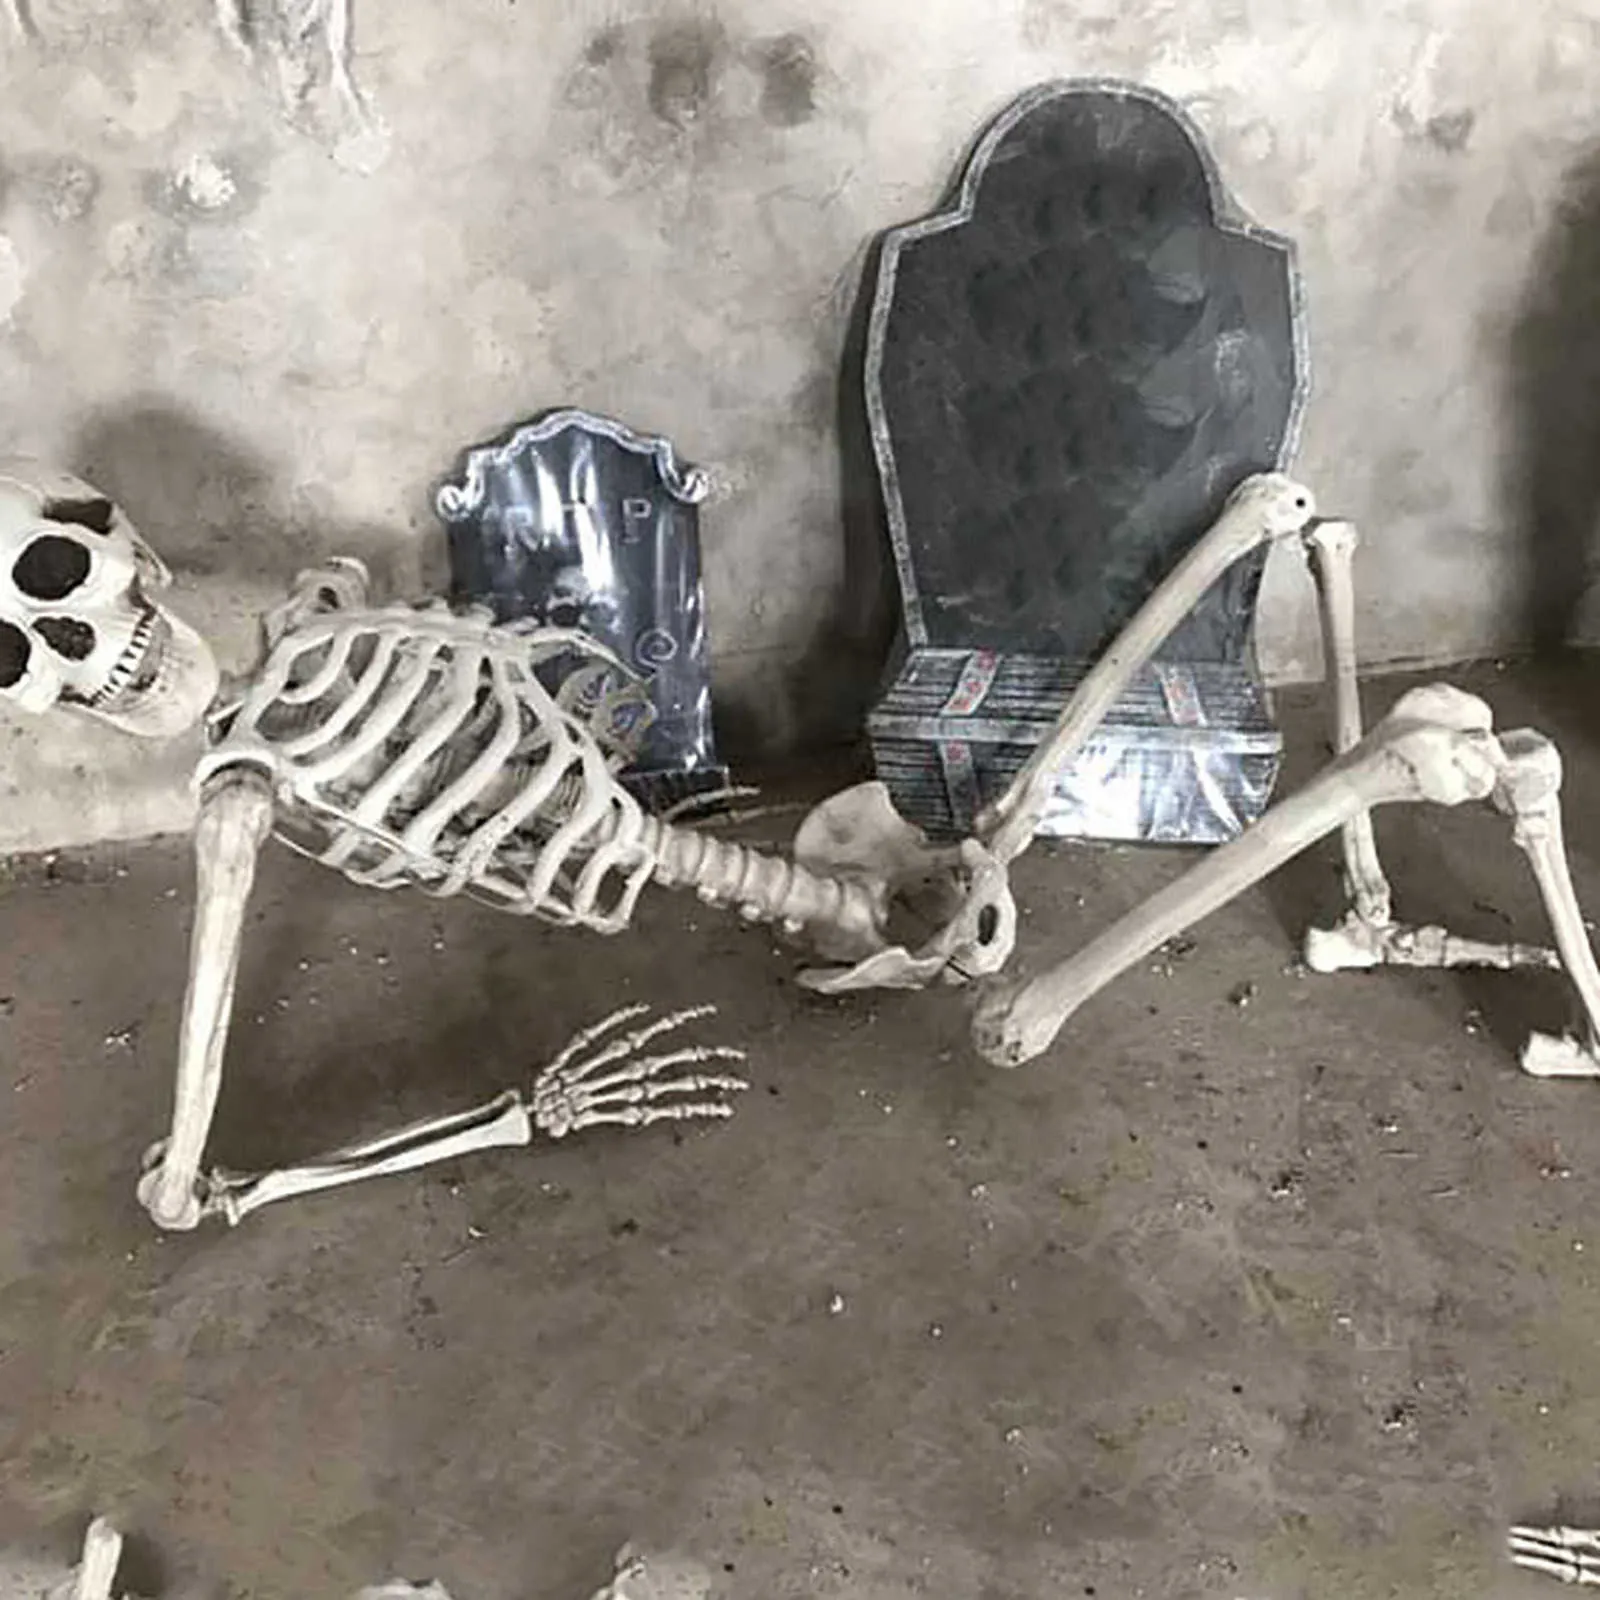 70CM Halloween Squelette Prop Humain Pleine Taille Crâne Main Vie Corps Anatomie Modèle DécorHalloween Party Décor Pour La Maison Y0909266G